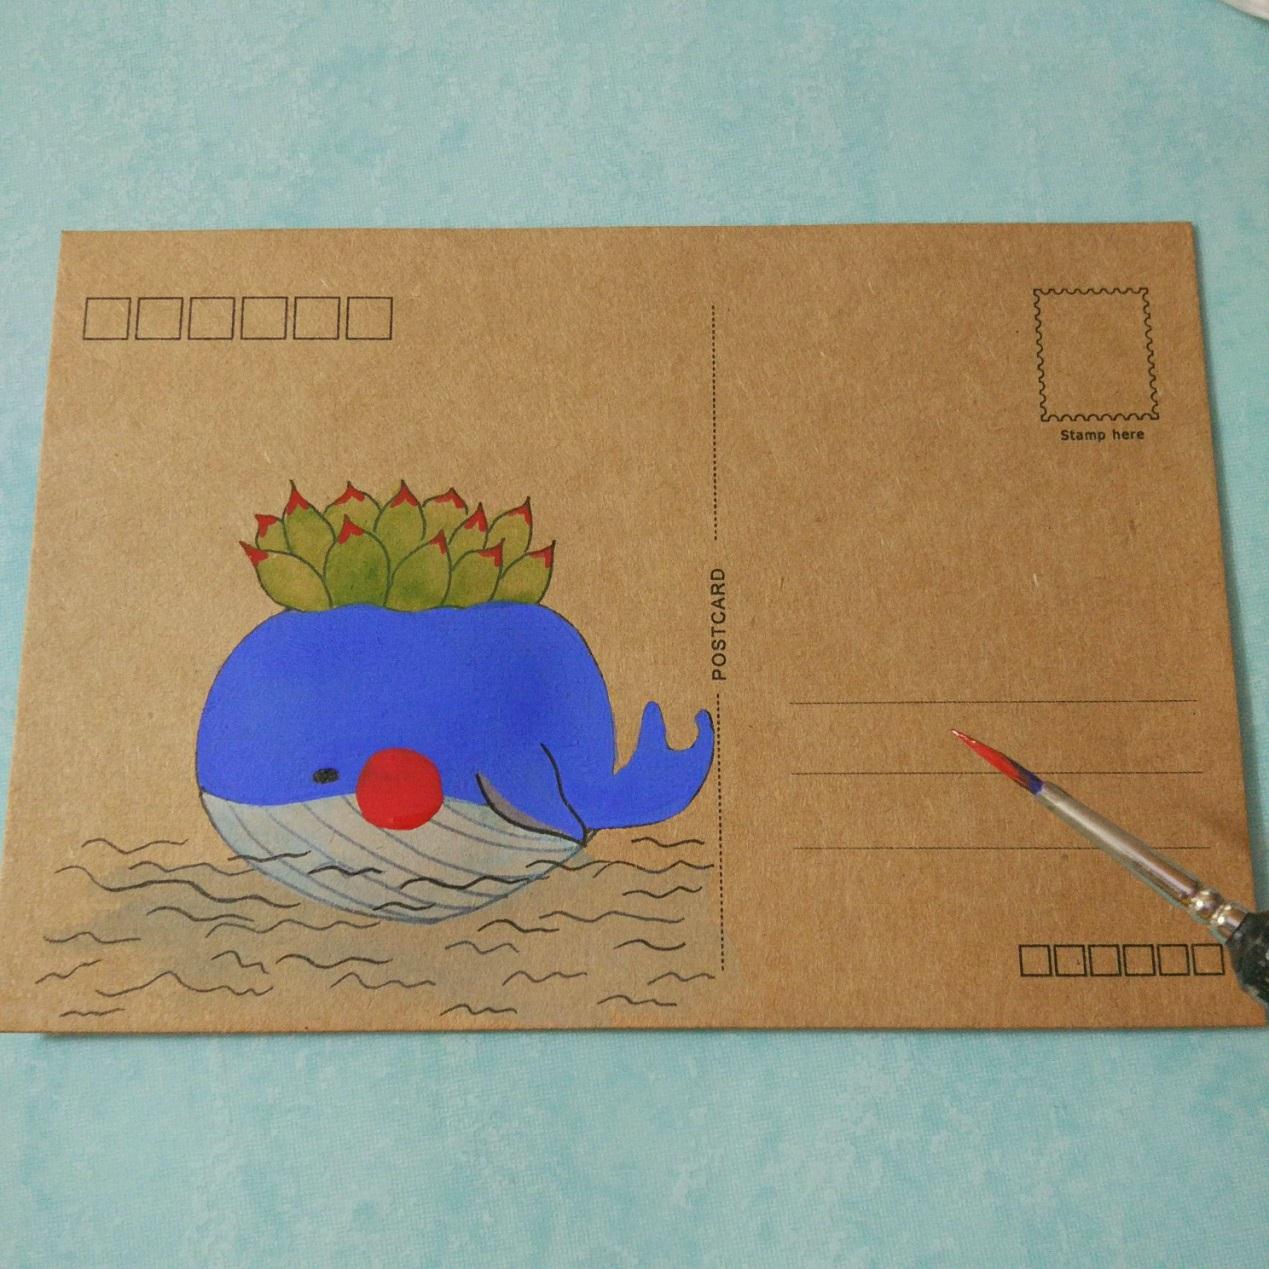 可爱的鲸鱼手绘画的过程图 简单的手绘明信片